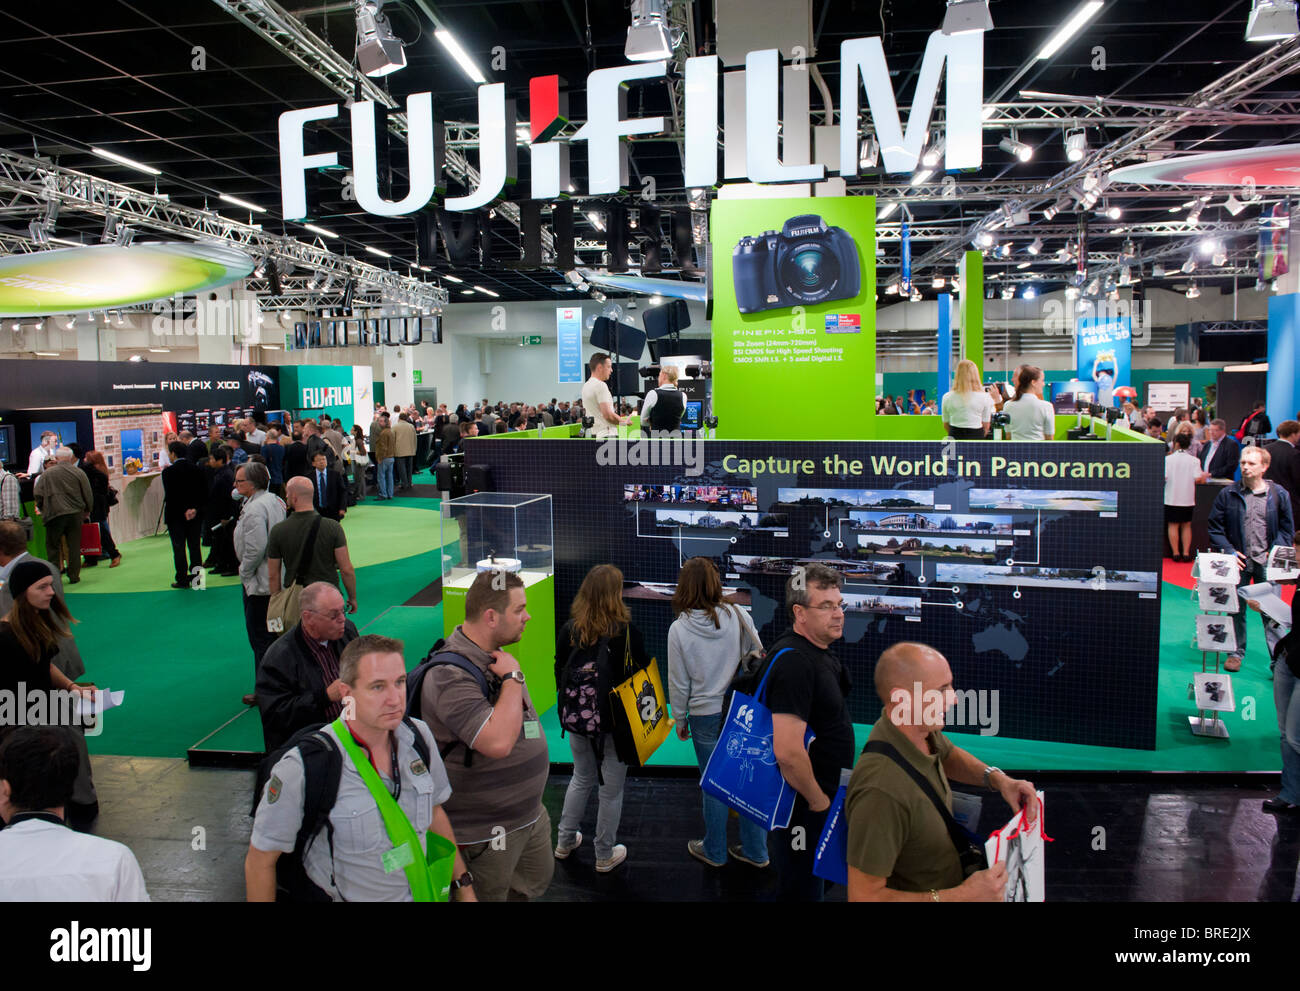 La folla passando Fujifilm stand Sony al Photokina digital imaging trade show di Colonia Germania Foto Stock